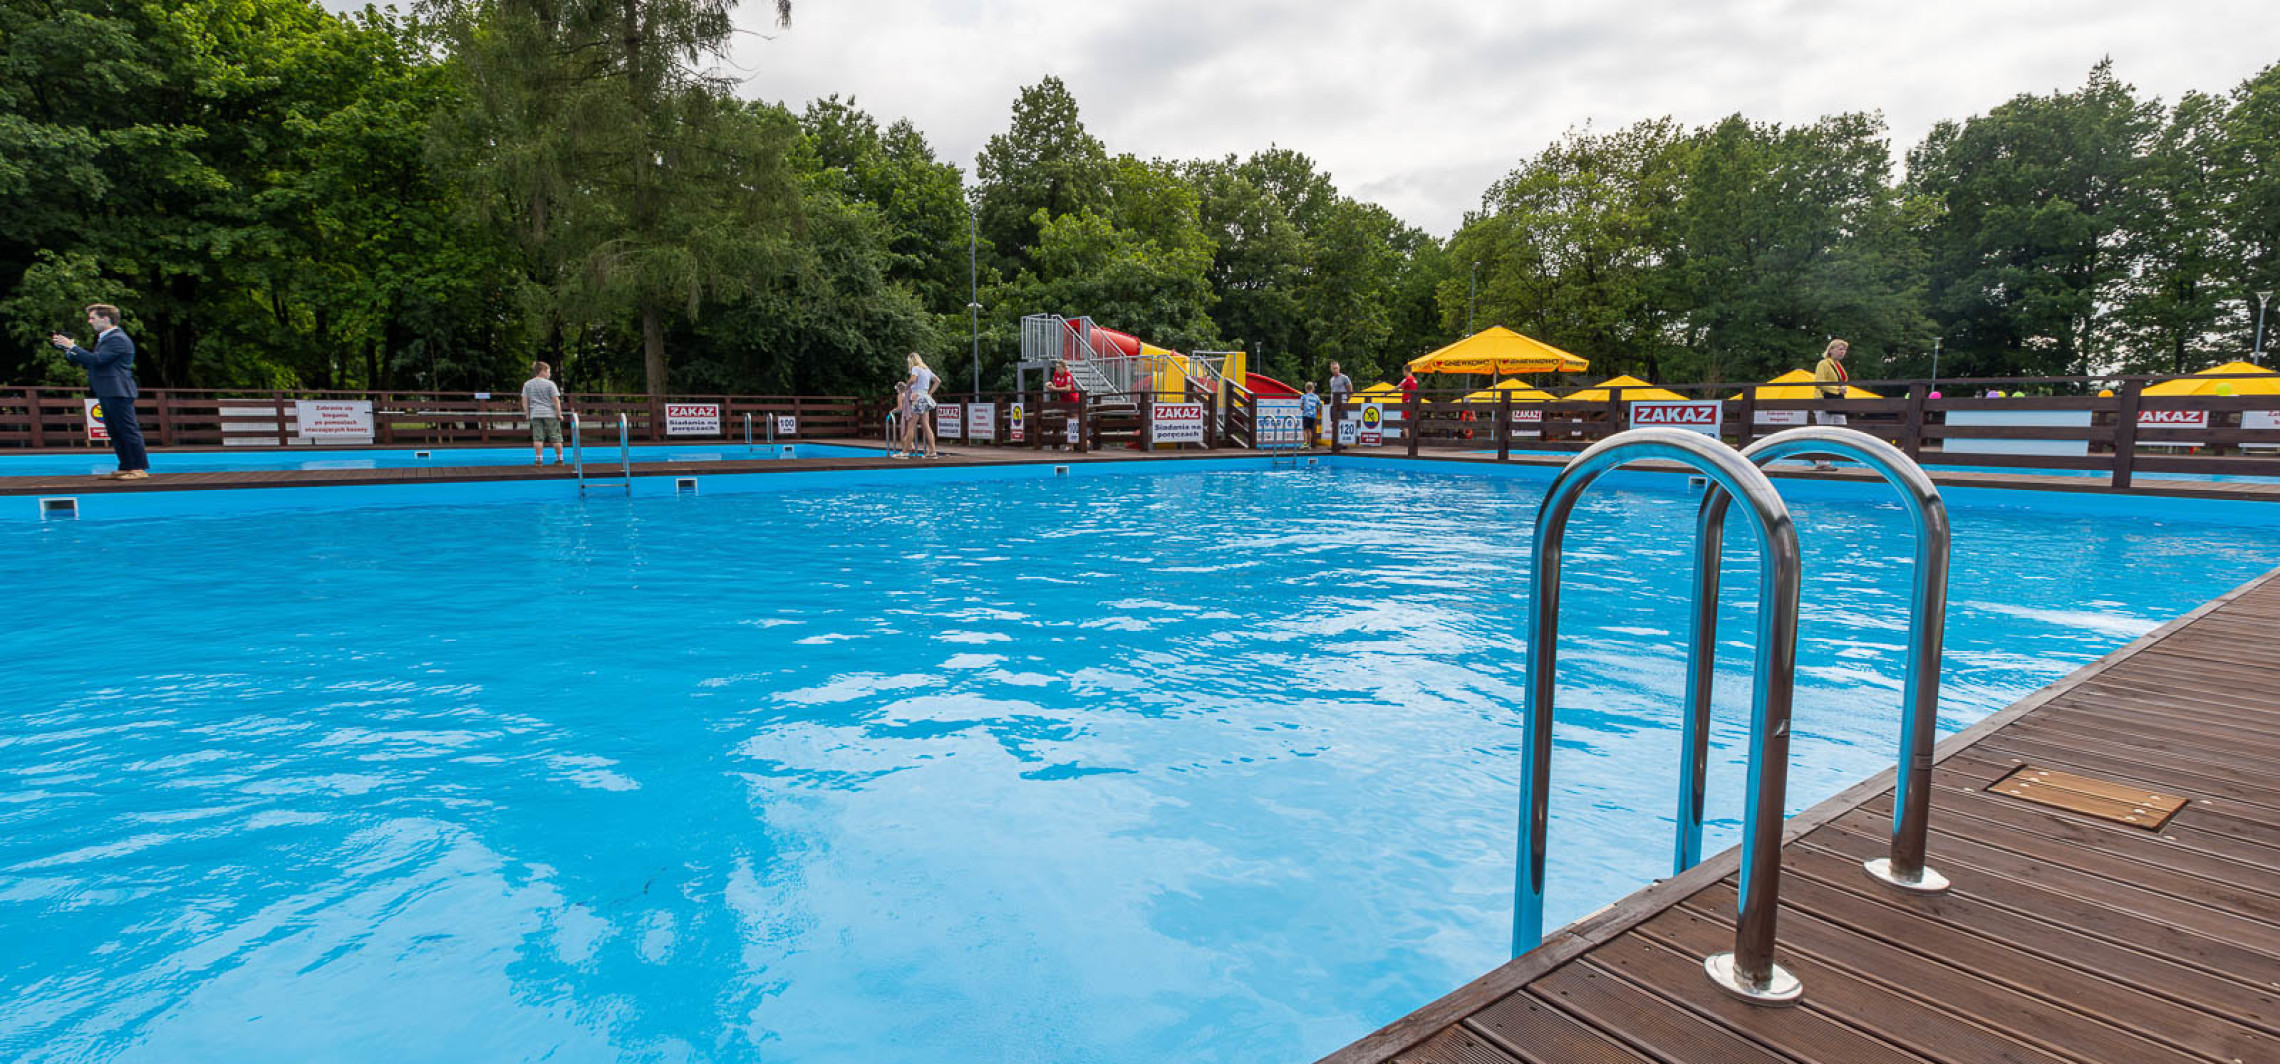 Gniewkowo - Znamy datę otwarcia basenów letnich w Gniewkowie